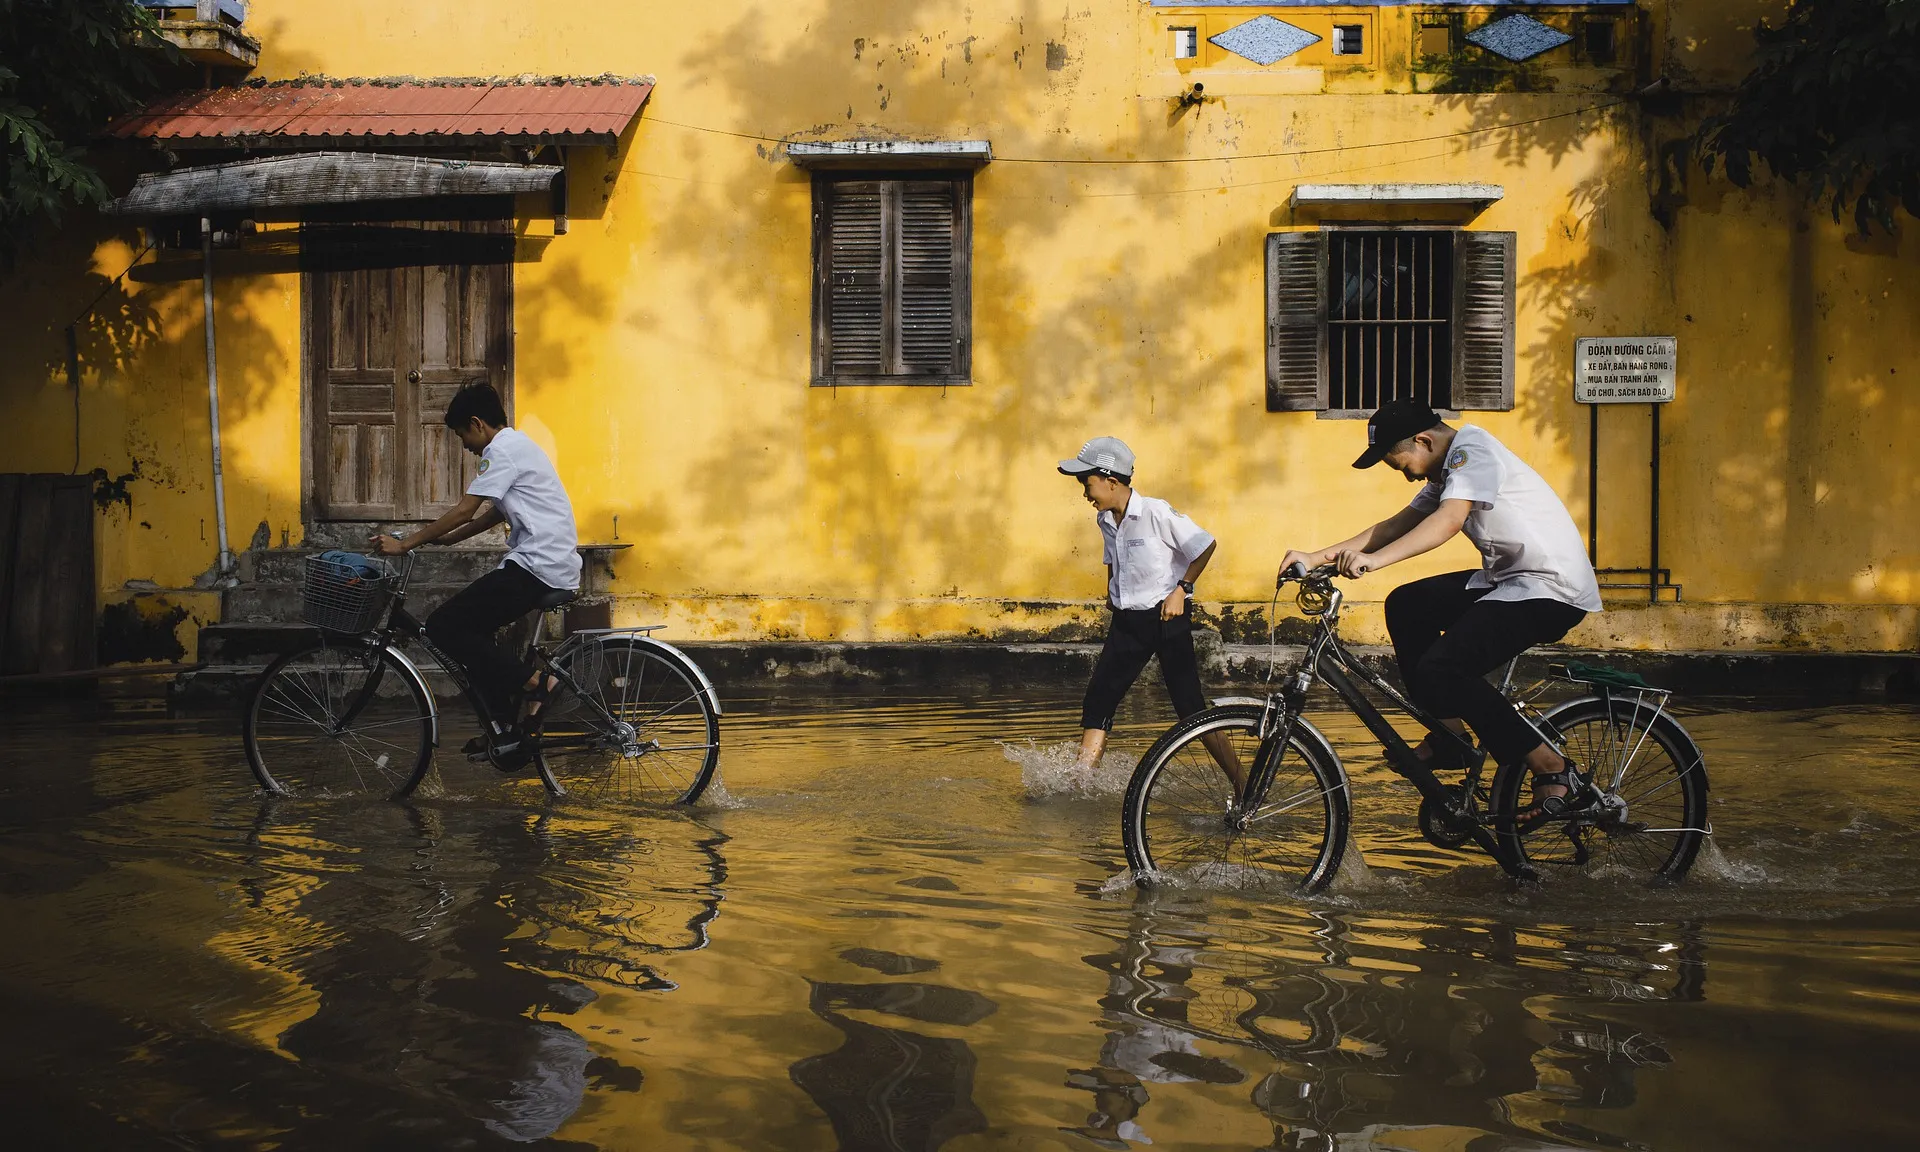 Nens en bicicleta en un carrer inundat per les pluges.